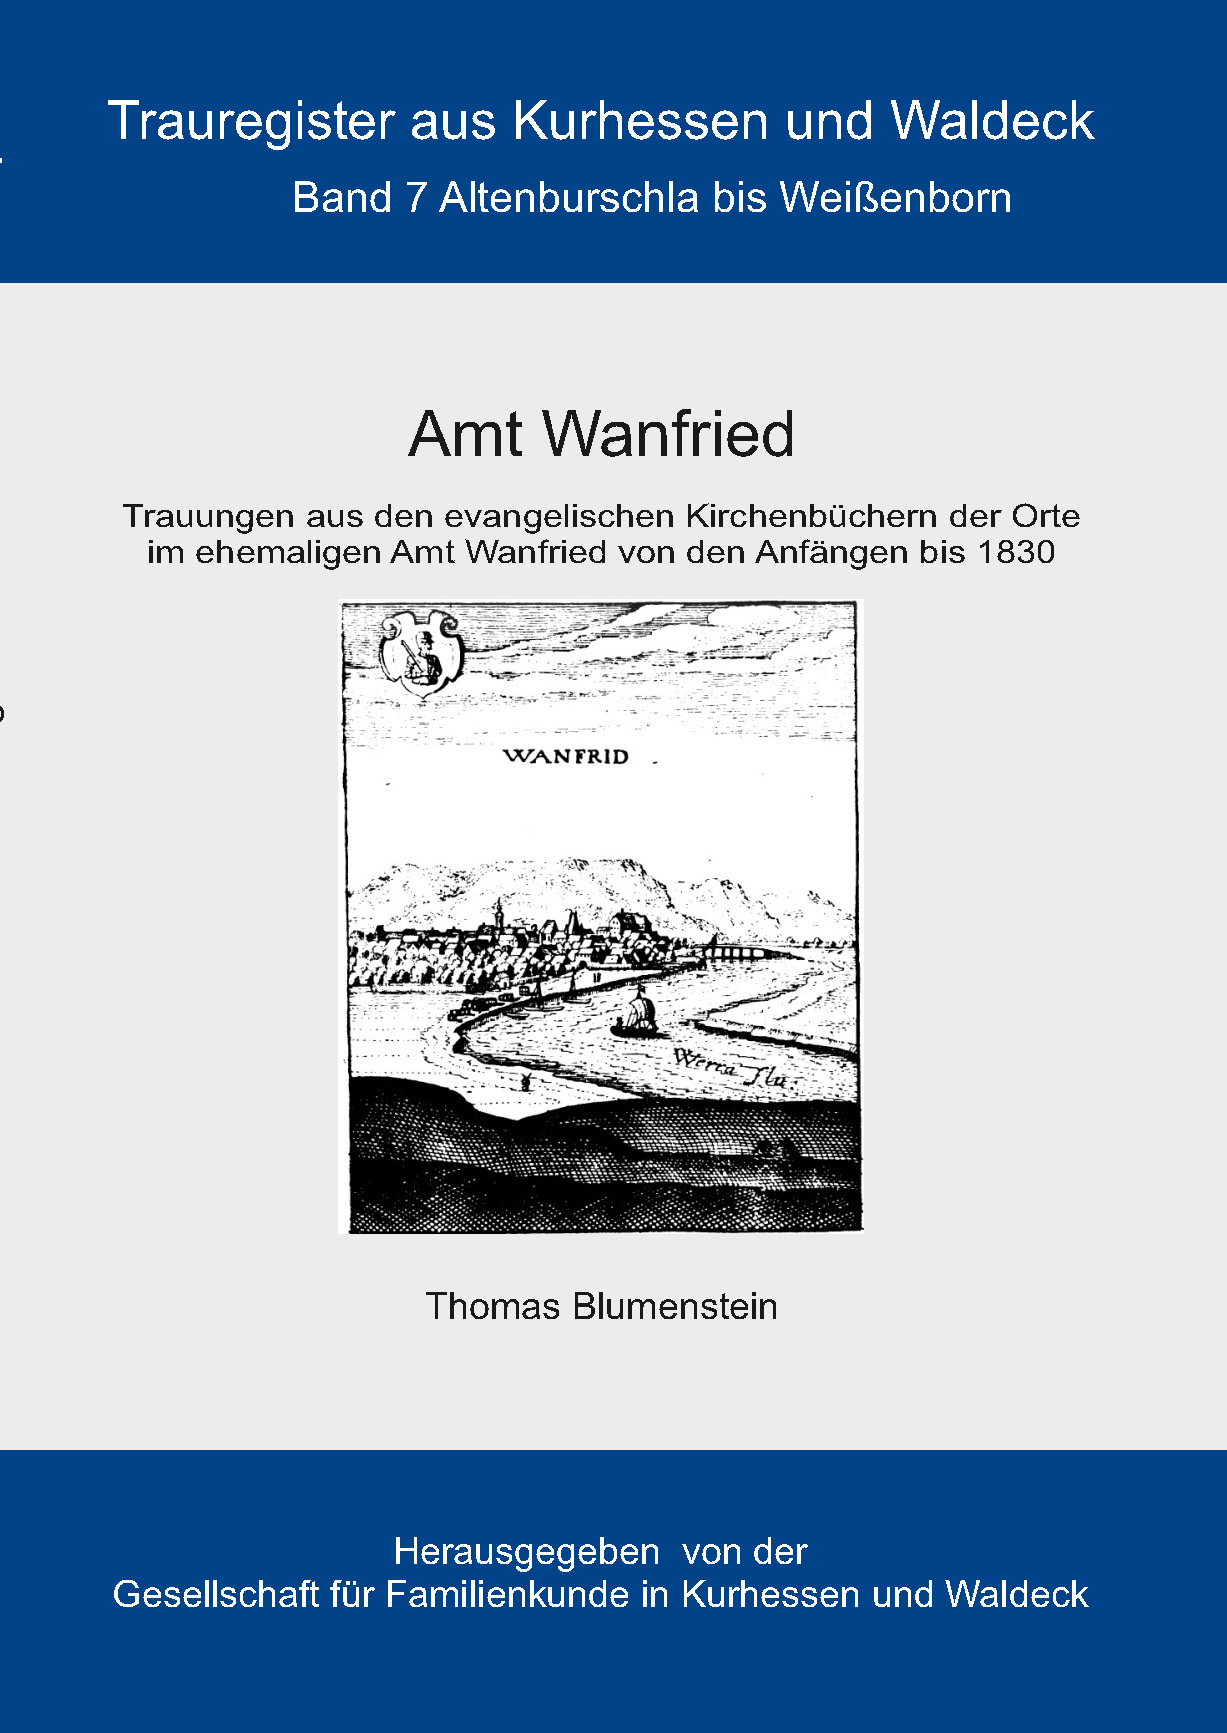 Trauregister aus Kurhessen und Waldeck, Band 7 Amt Wanfried